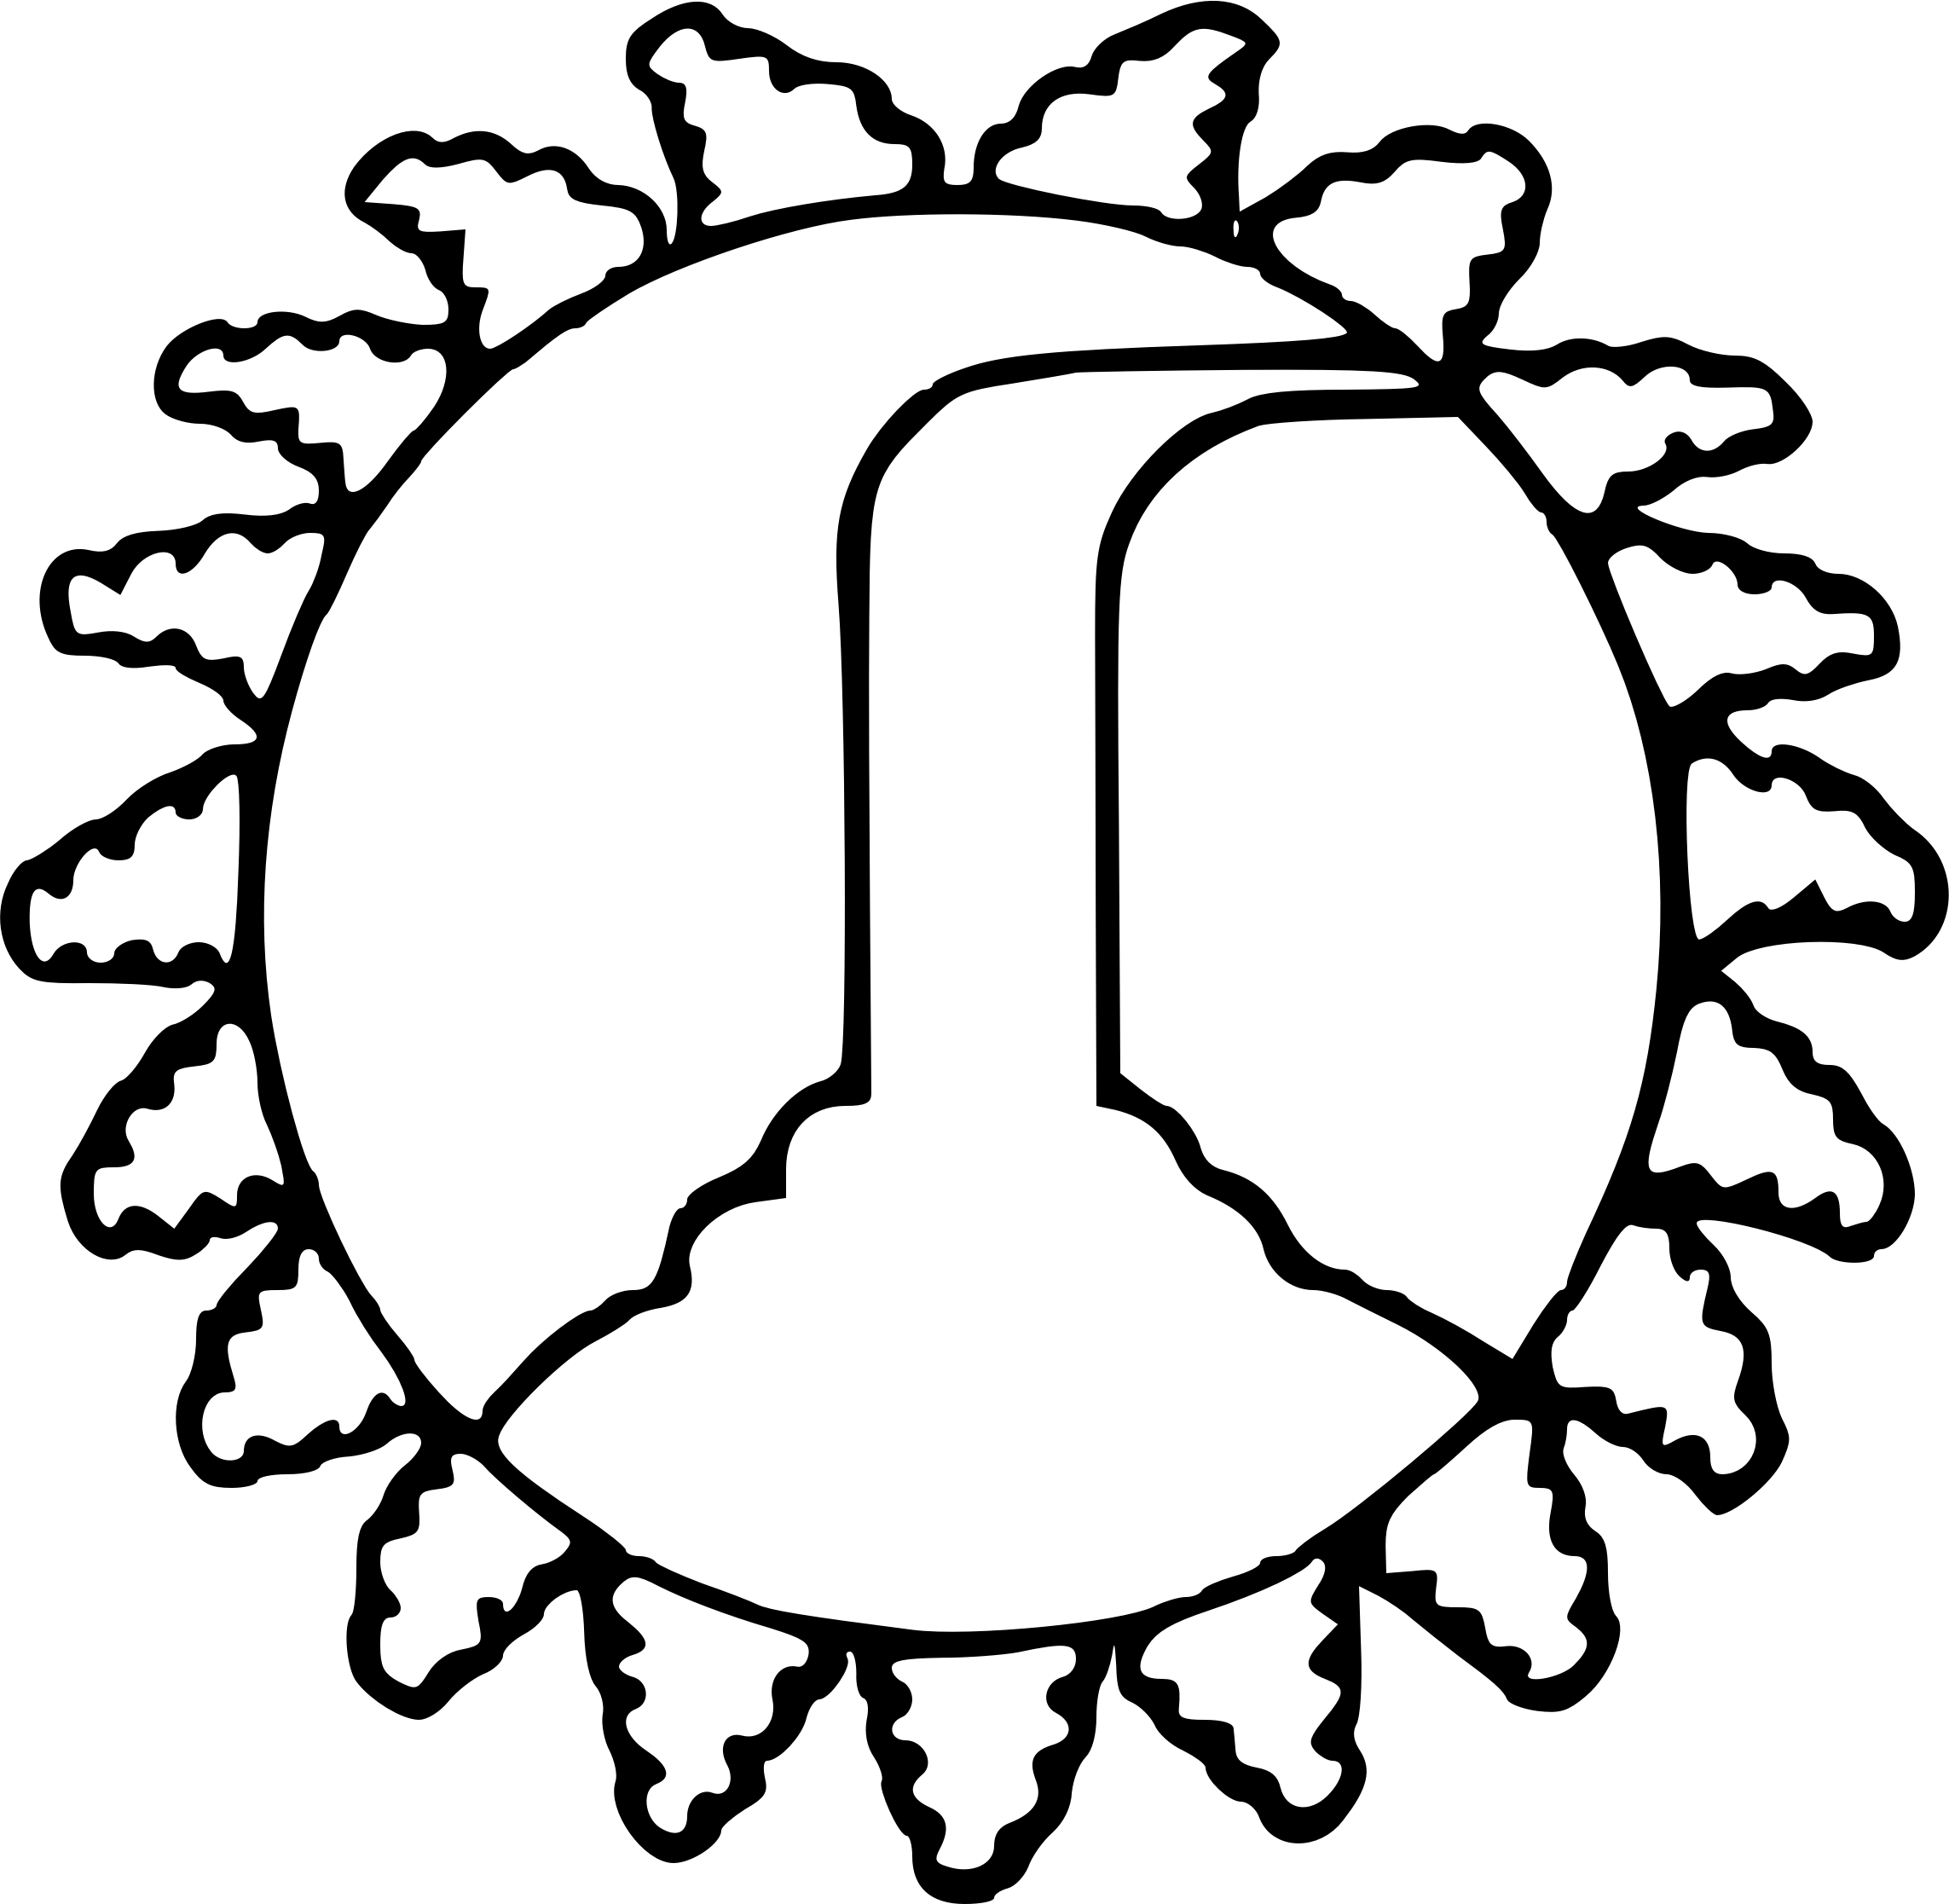 Big Image - D&d Symbol Of Eldath (2286x2233)